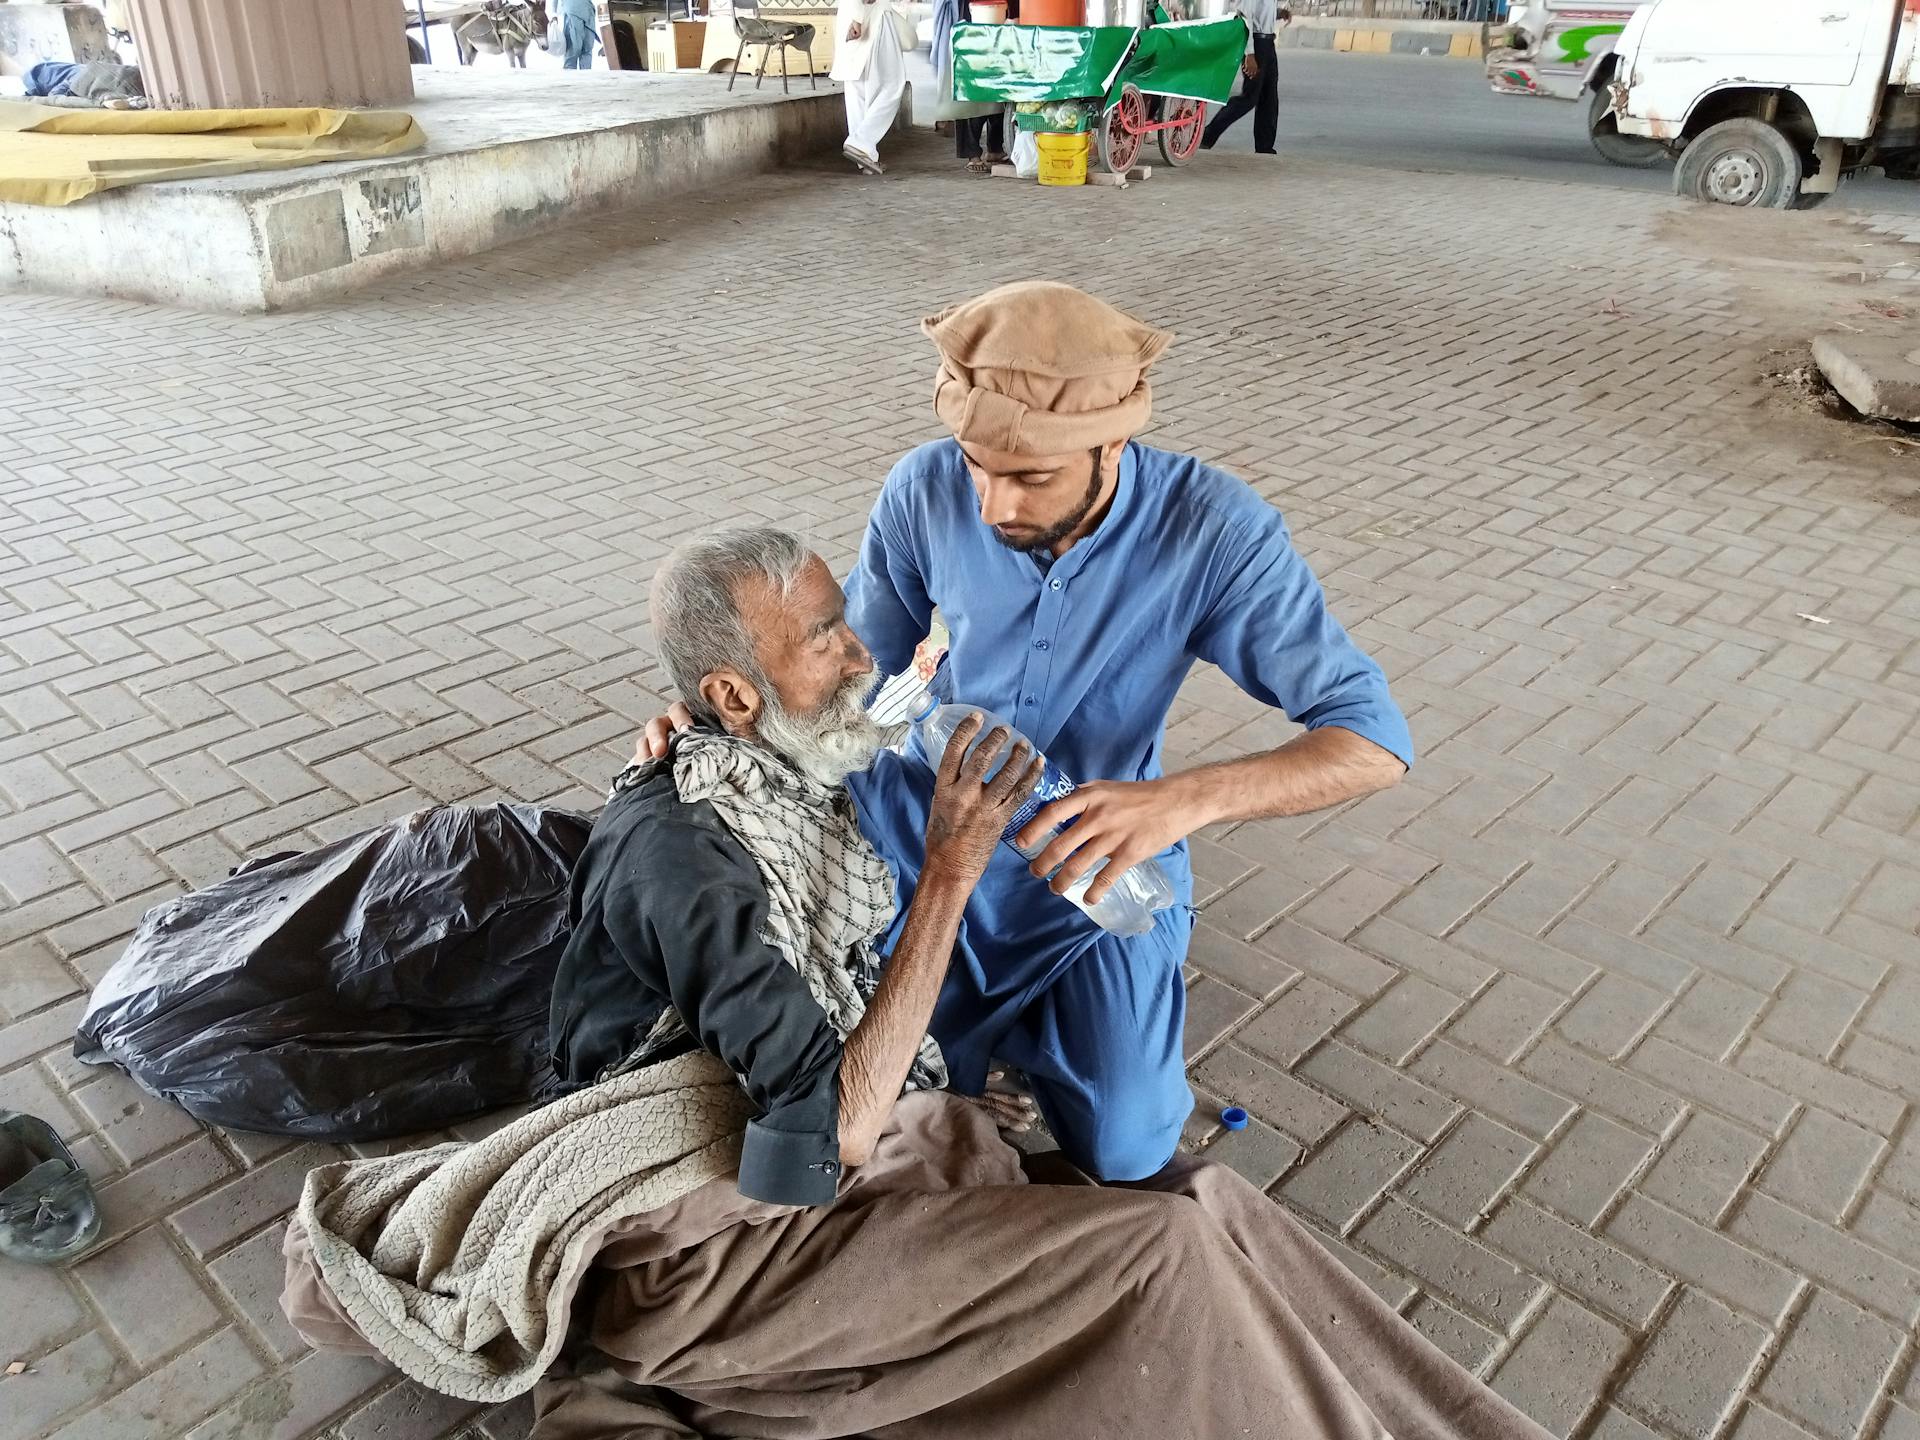 Man In Blue Clothing Feeding An Old Man